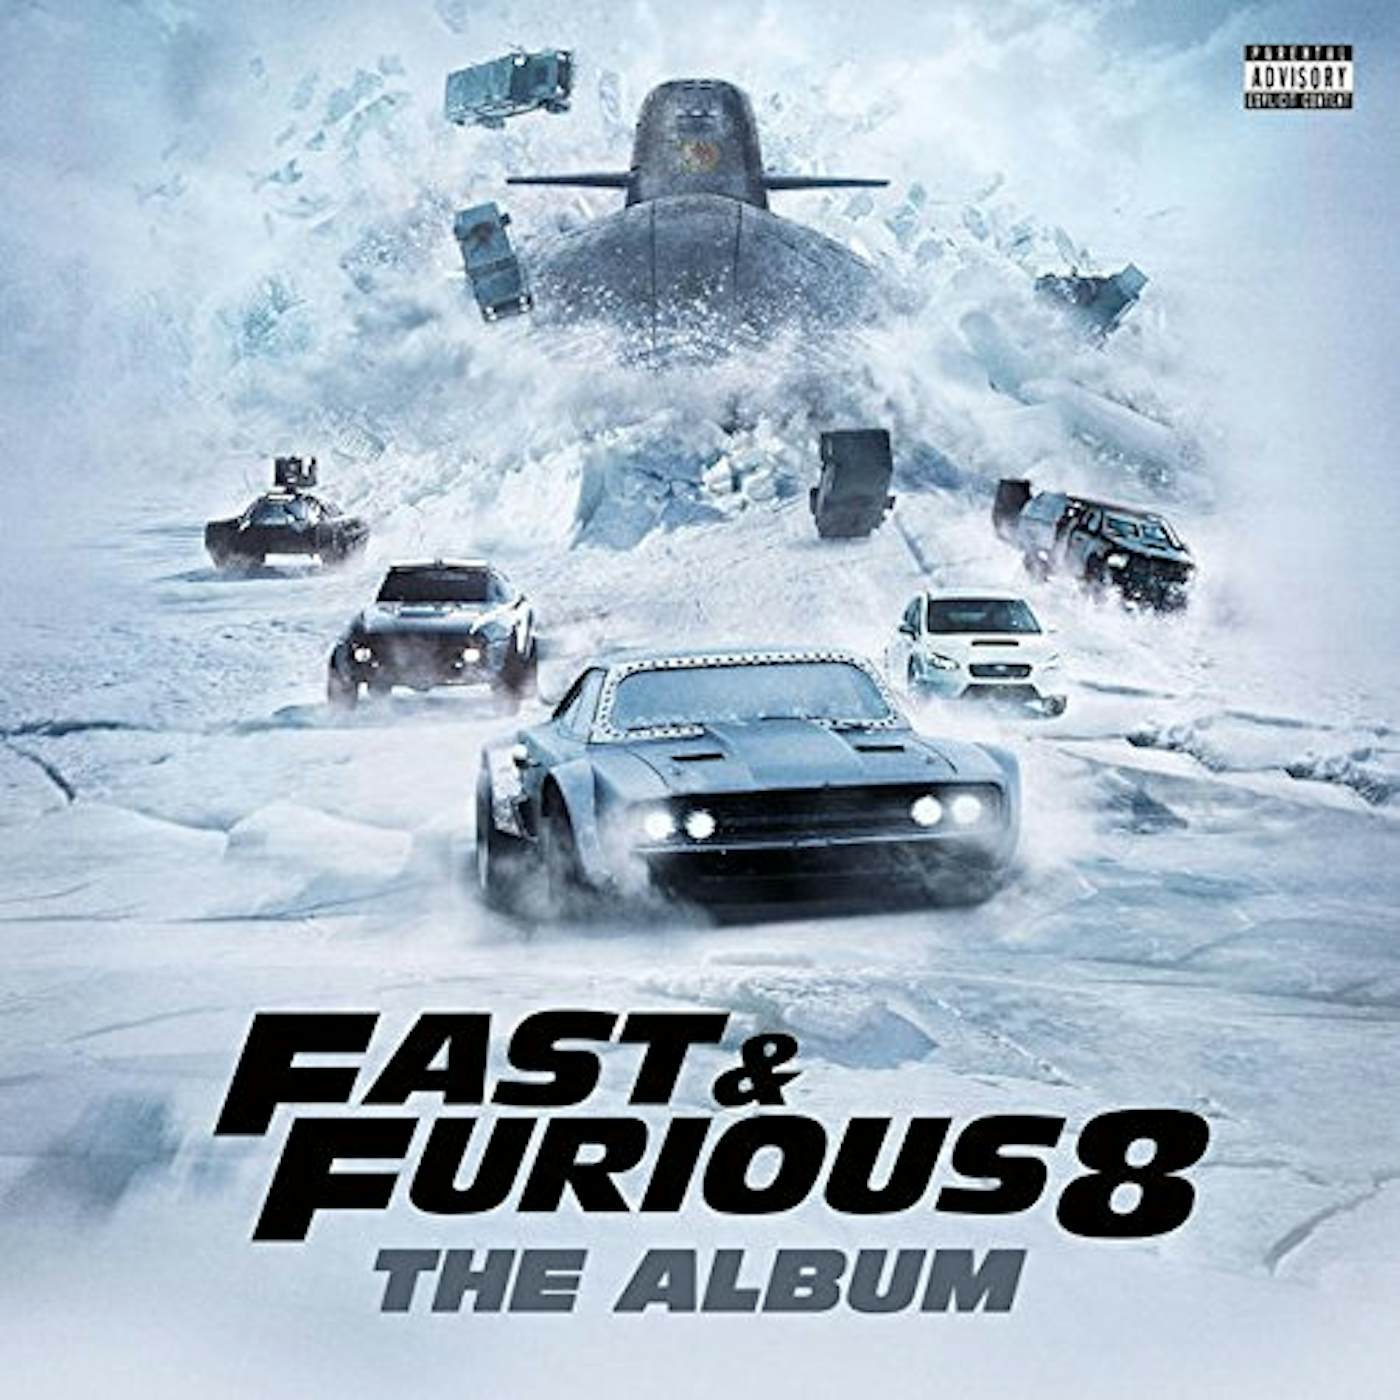 Fate Of The Furious: The Album / O.S.T. FATE OF THE FURIOUS: THE ALBUM / Original Soundtrack Vinyl Record